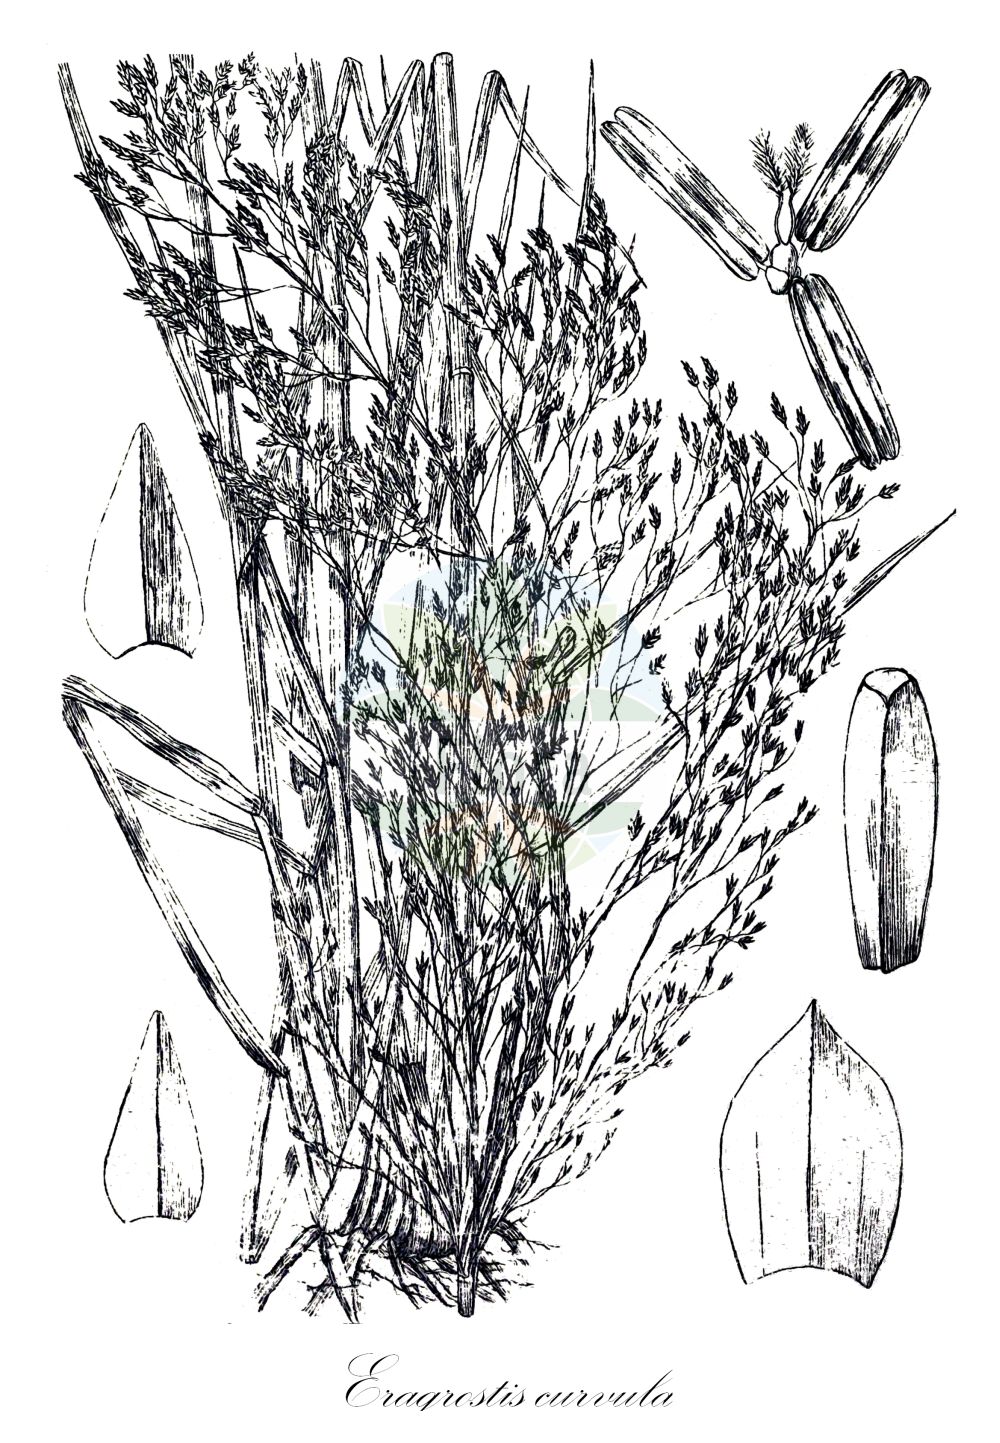 Historische Abbildung von Eragrostis curvula (Gekrümmtes Liebesgras - African Love-grass). Das Bild zeigt Blatt, Bluete, Frucht und Same. ---- Historical Drawing of Eragrostis curvula (Gekrümmtes Liebesgras - African Love-grass). The image is showing leaf, flower, fruit and seed.(Eragrostis curvula,Gekrümmtes Liebesgras,African Love-grass,Eragrostis curvula,Poa curvula,Gekruemmtes Liebesgras,African Love-grass,Boer Lovegrass,Weeping Lovegrass,Eragrostis,Liebesgras,Lovergrass,Poaceae,Süßgräser,Grass family,Blatt,Bluete,Frucht,Same,leaf,flower,fruit,seed,Wood & Evans (1898-1912))